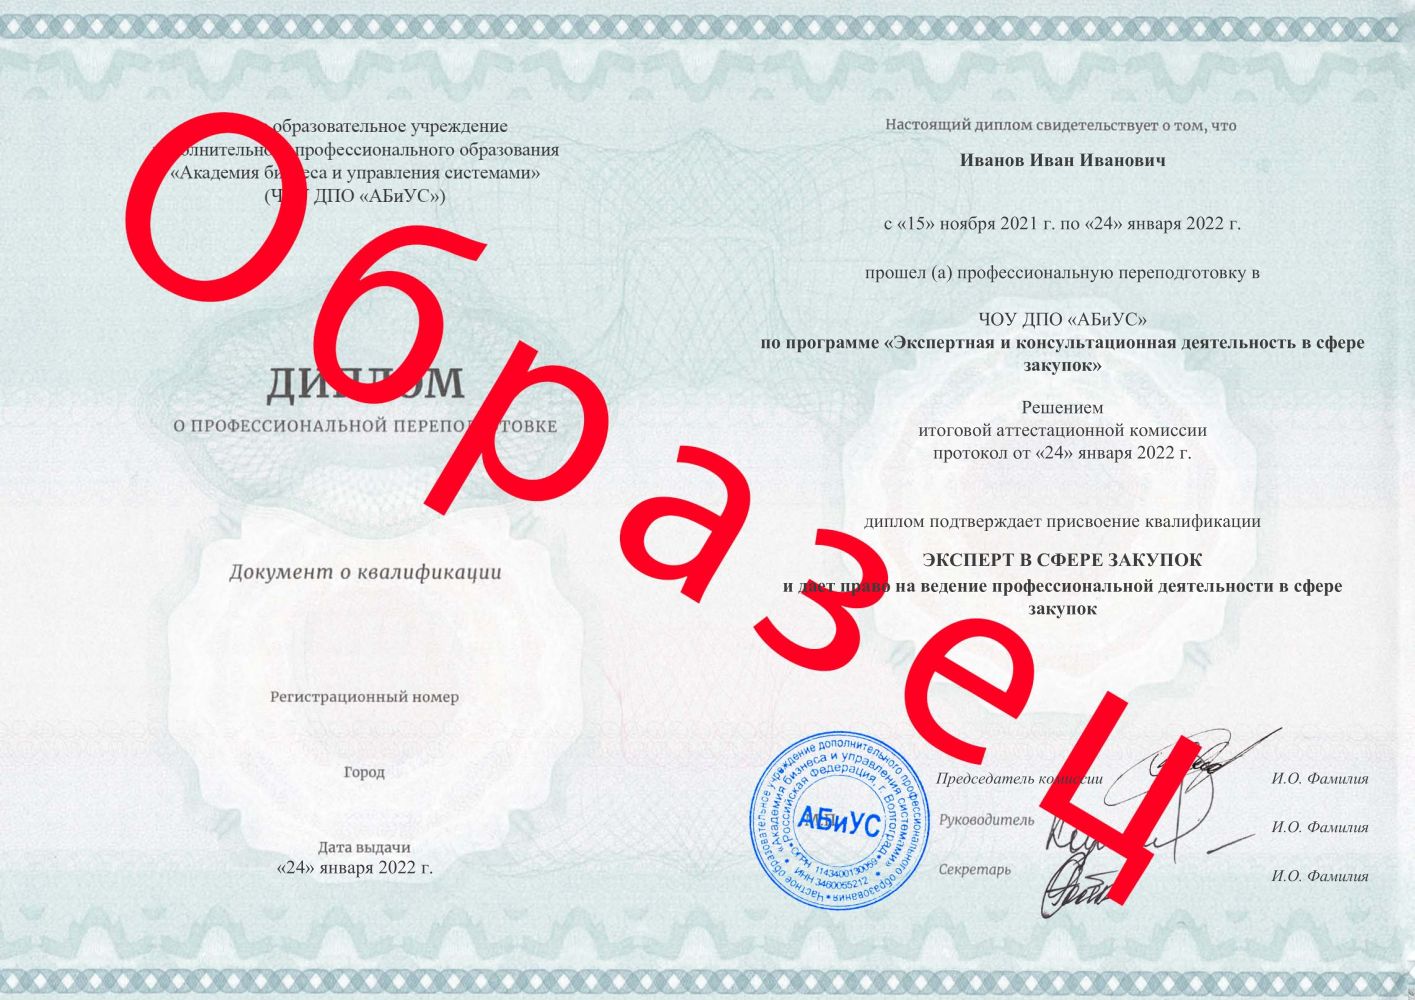 Диплом Экспертная и консультационная деятельность в сфере закупок 260 часов 10600 руб.